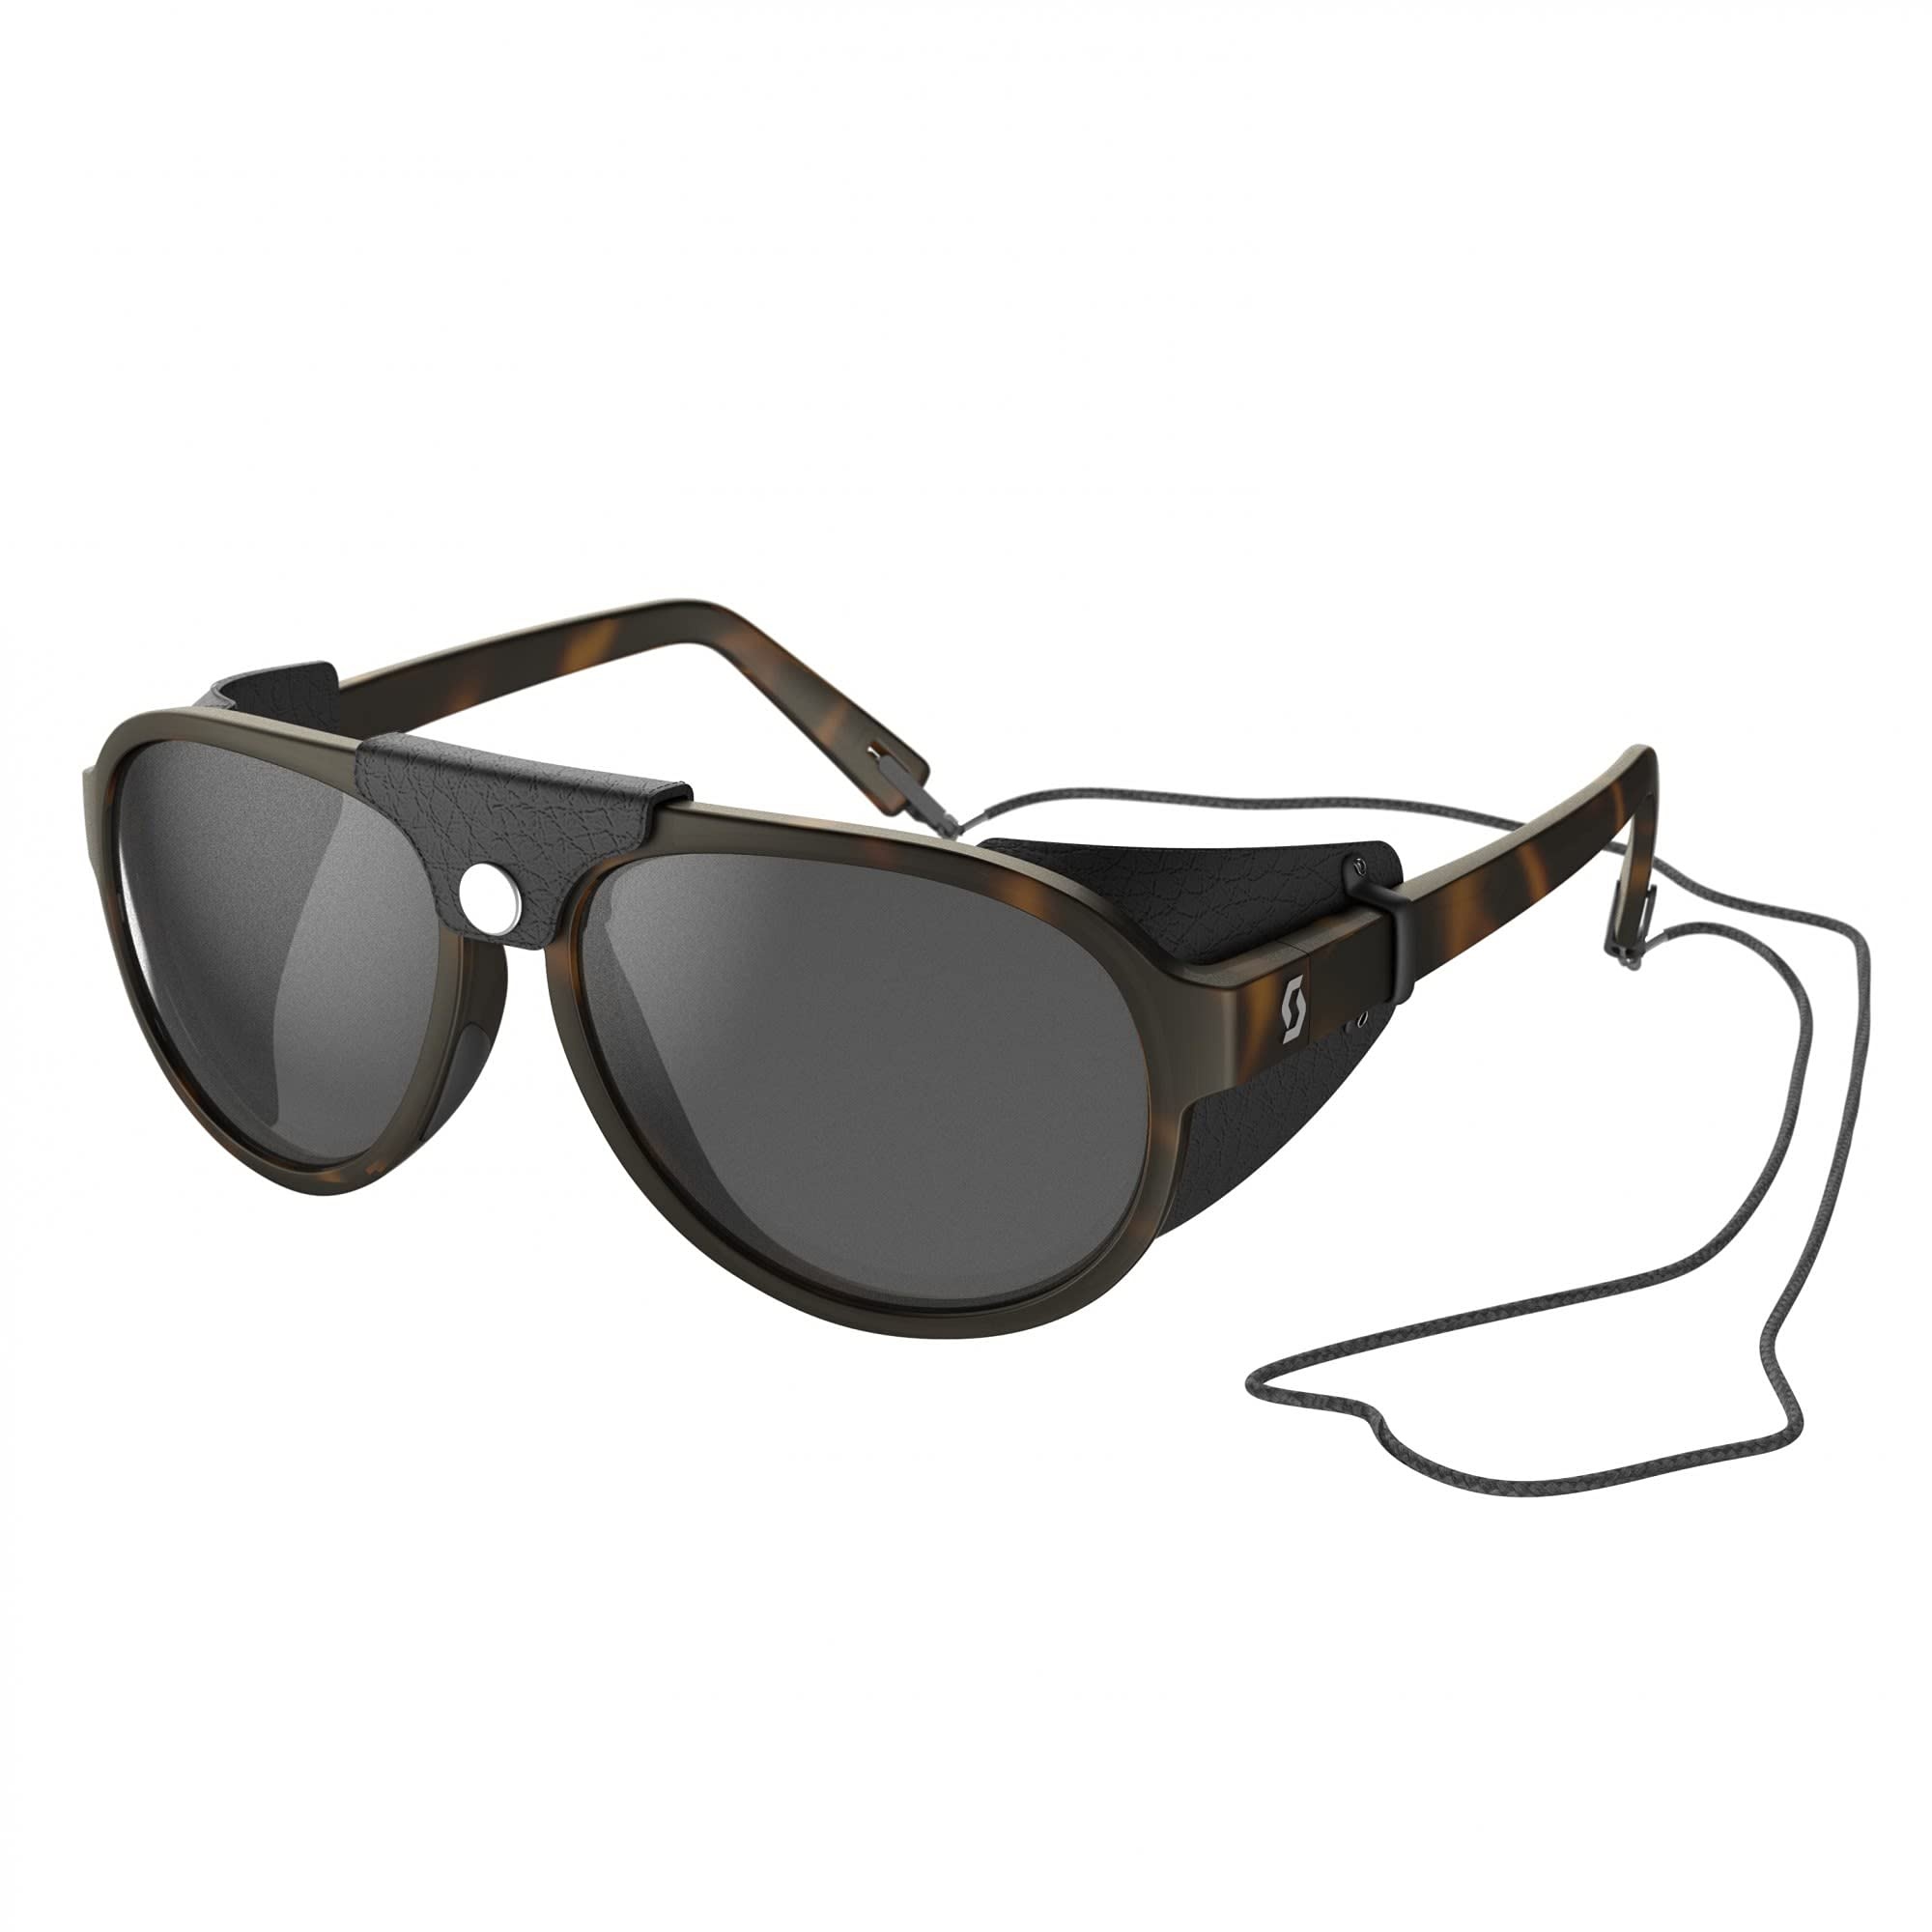 Scott Cervina Sunglasses Braun, Sportbrille, Größe One Size - Farbe Tortoise Brown - Grey